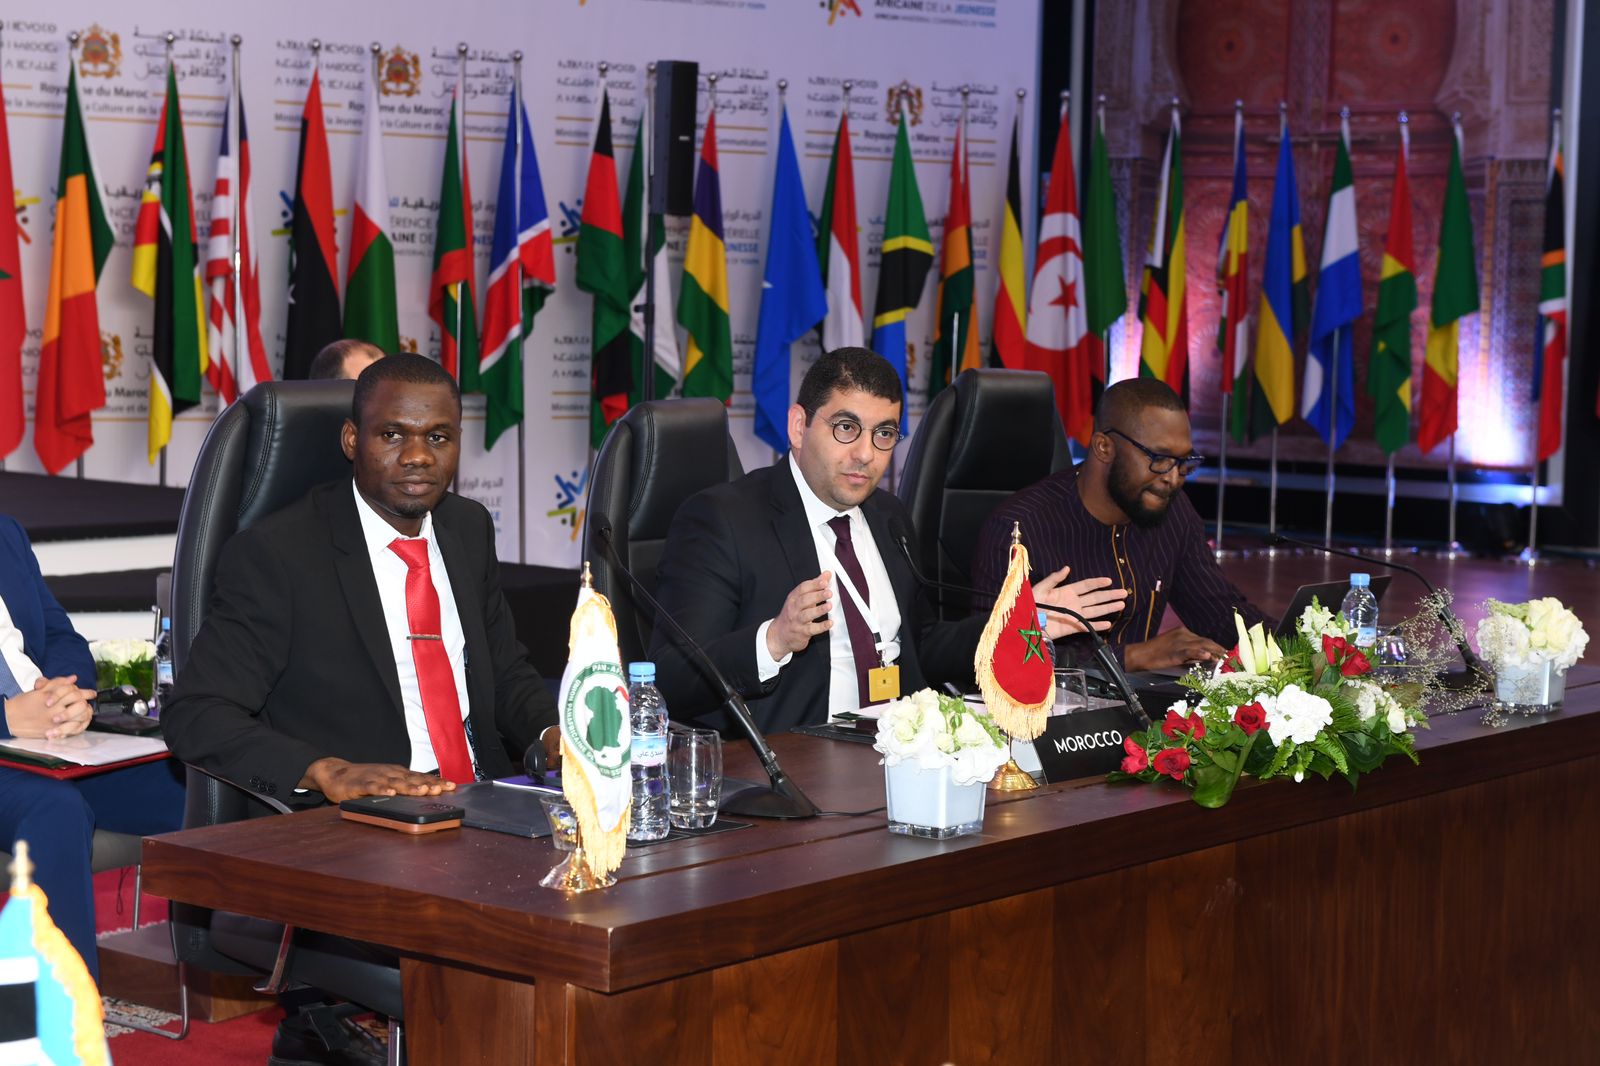 Maroc : tenue de la conférence des ministres africains de la Jeunesse